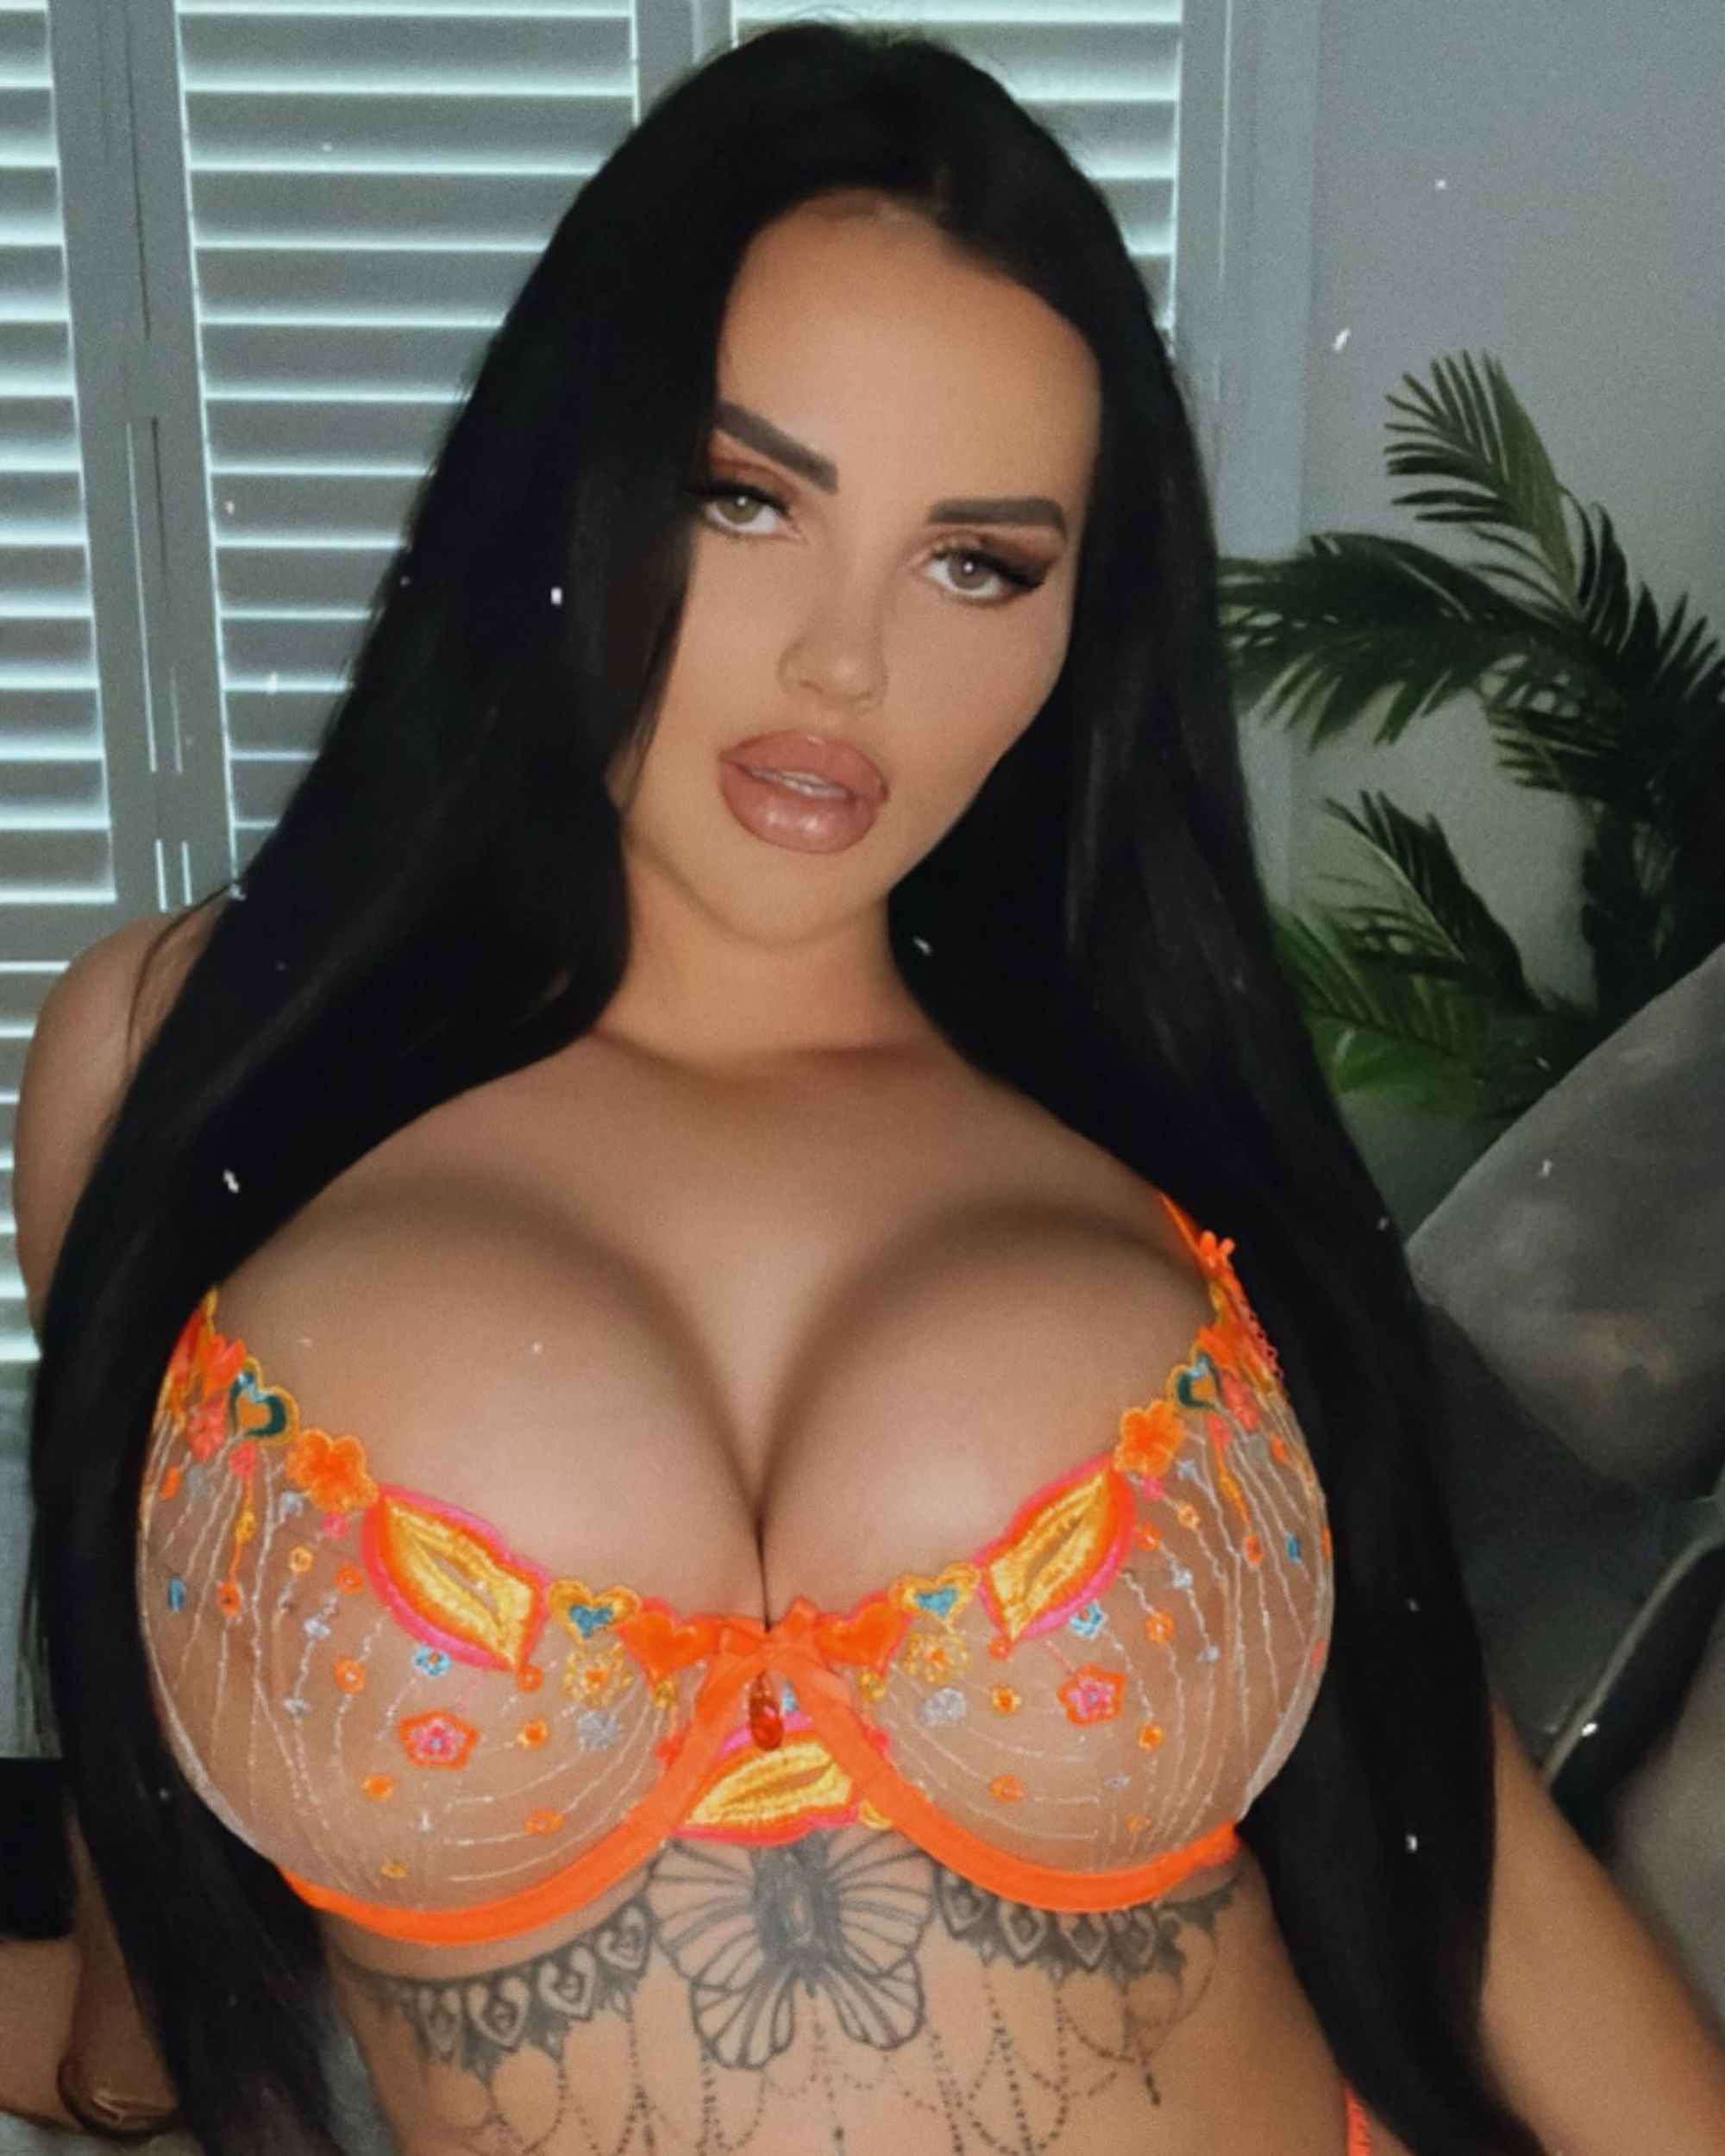 donna jeter recommends Instagram Model Turned Pornstar